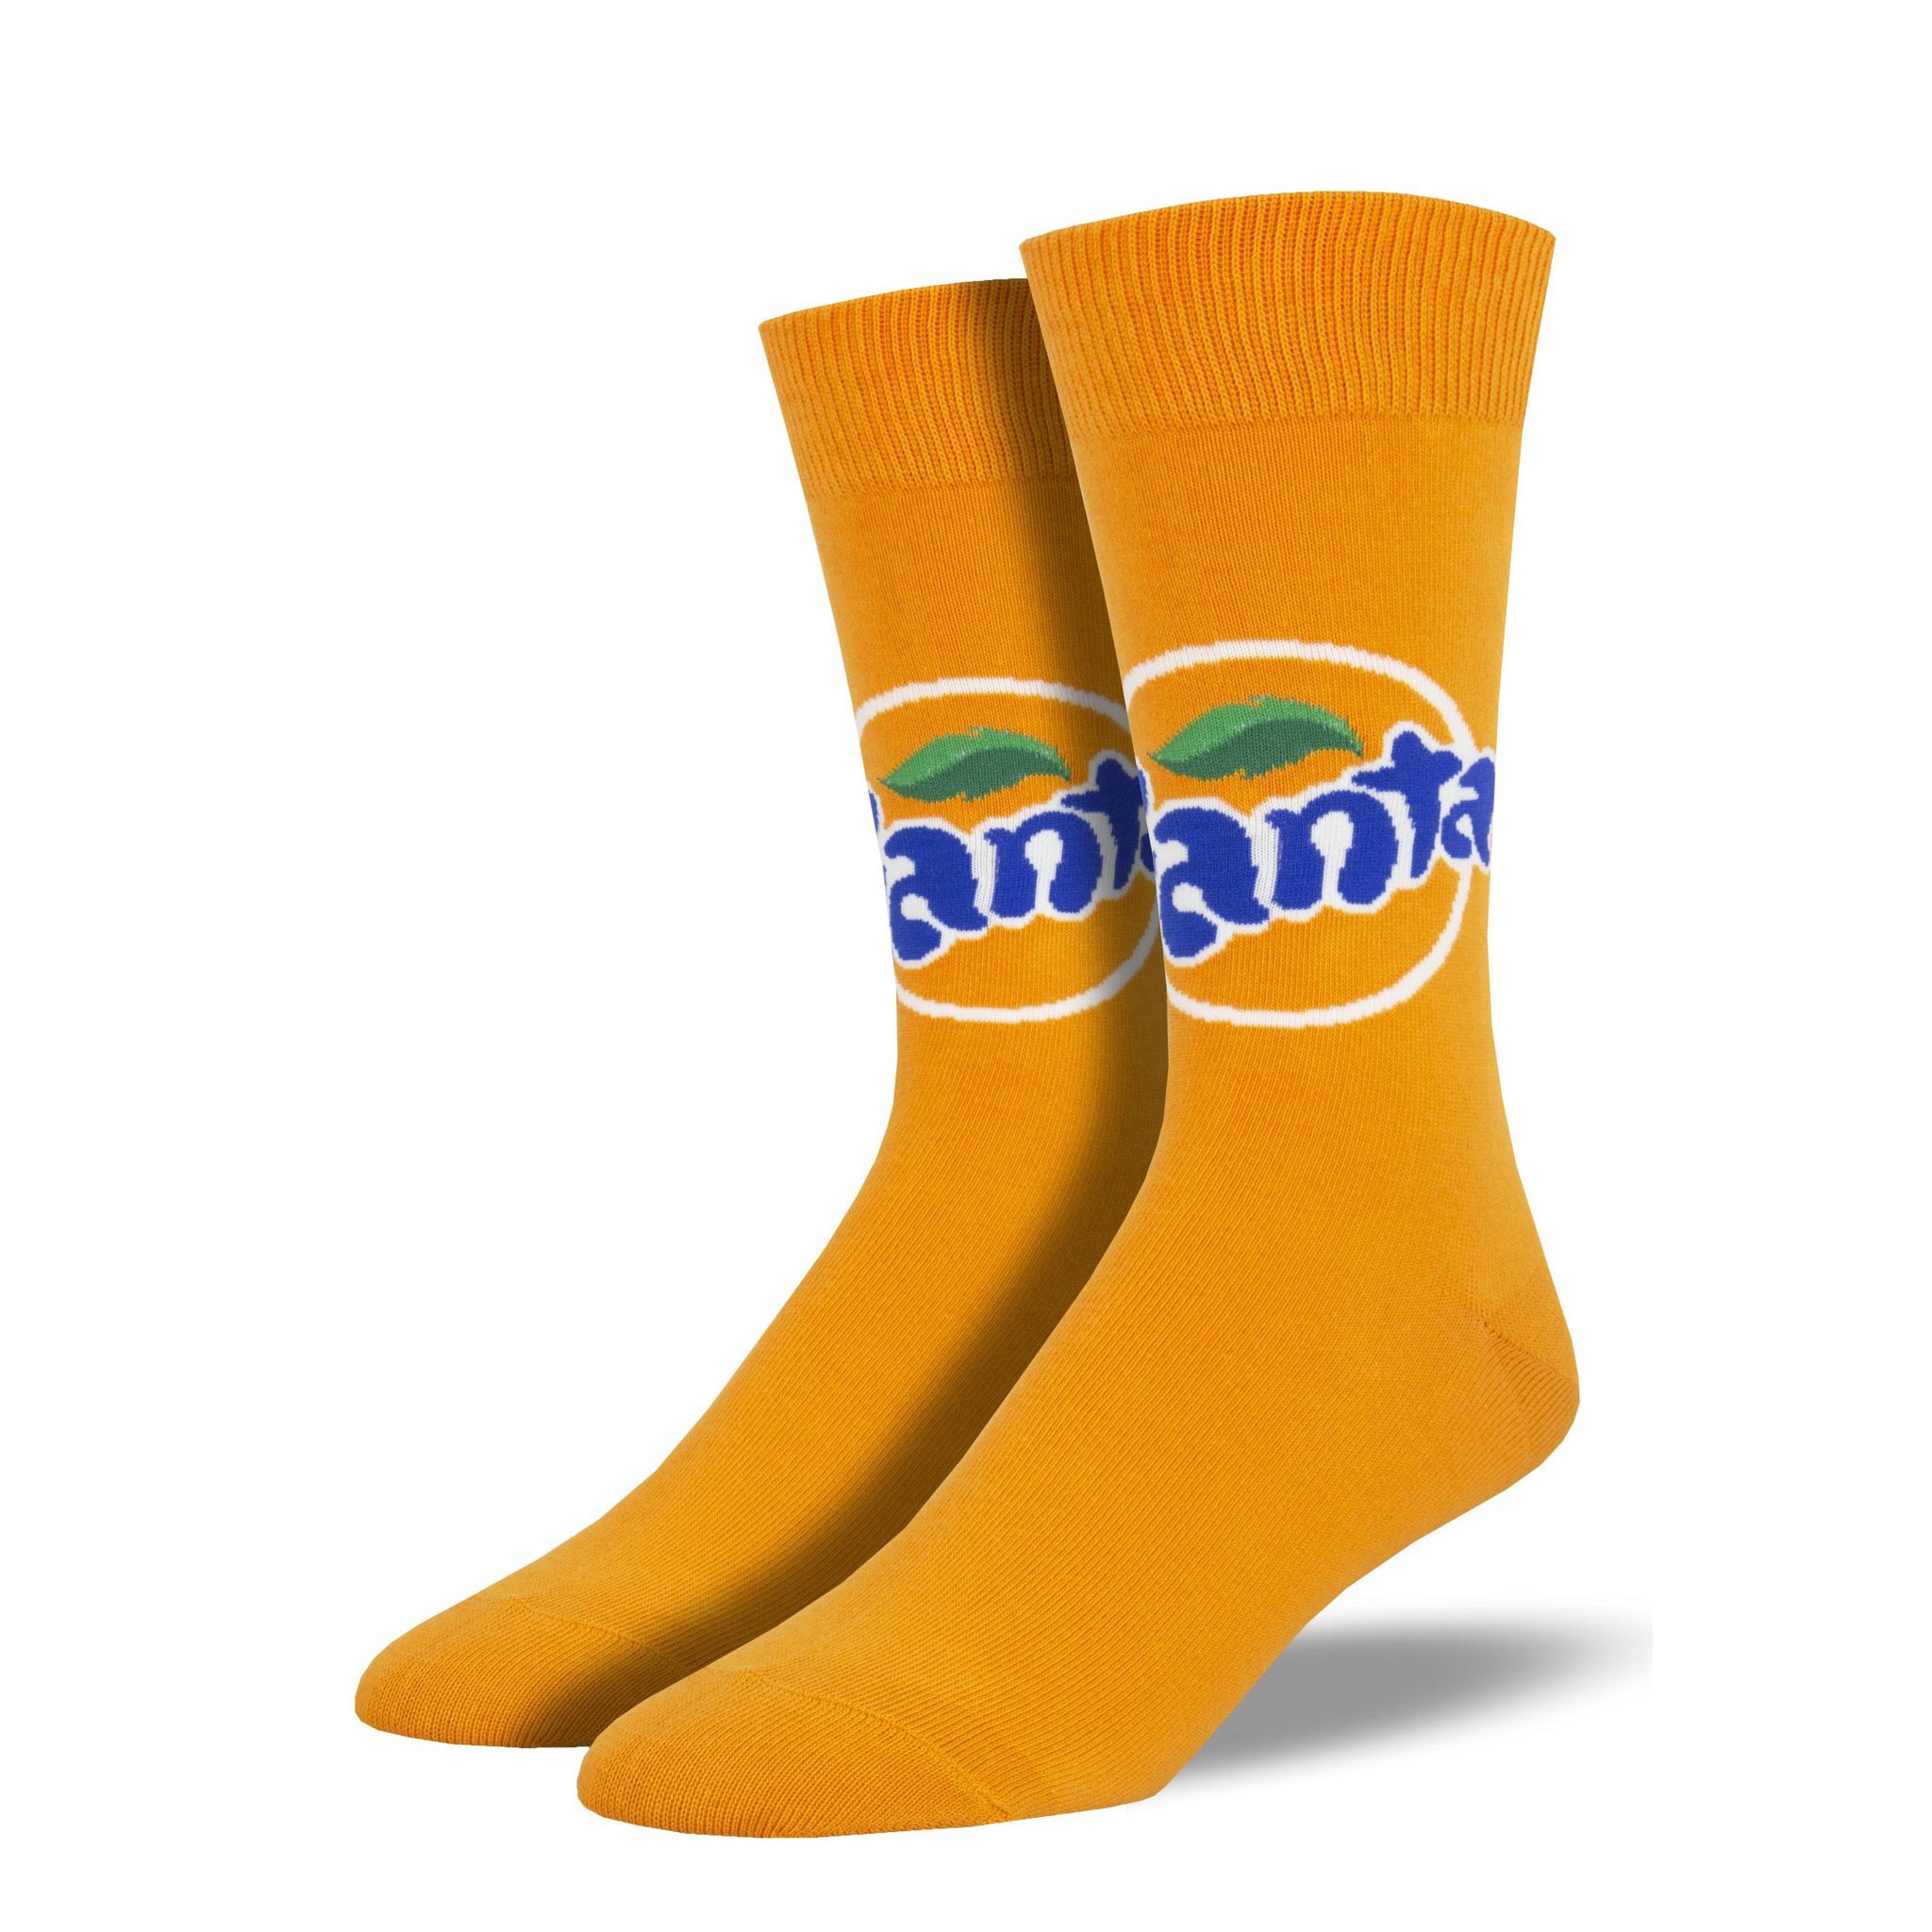 Fanta Orange Soda Socks